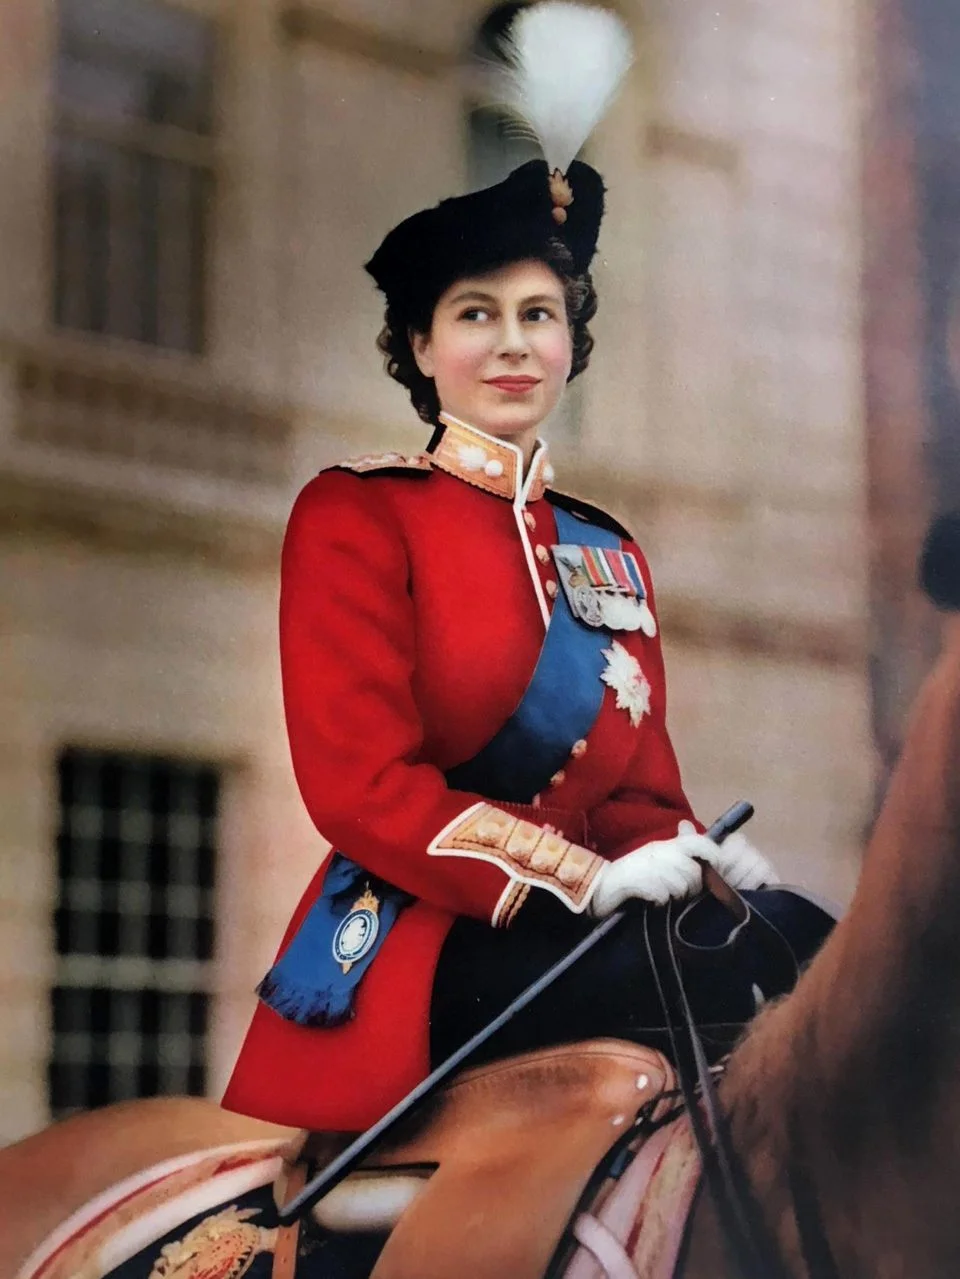 В сети появились редкие архивные фото из жизни королевской семьи - фото 388202